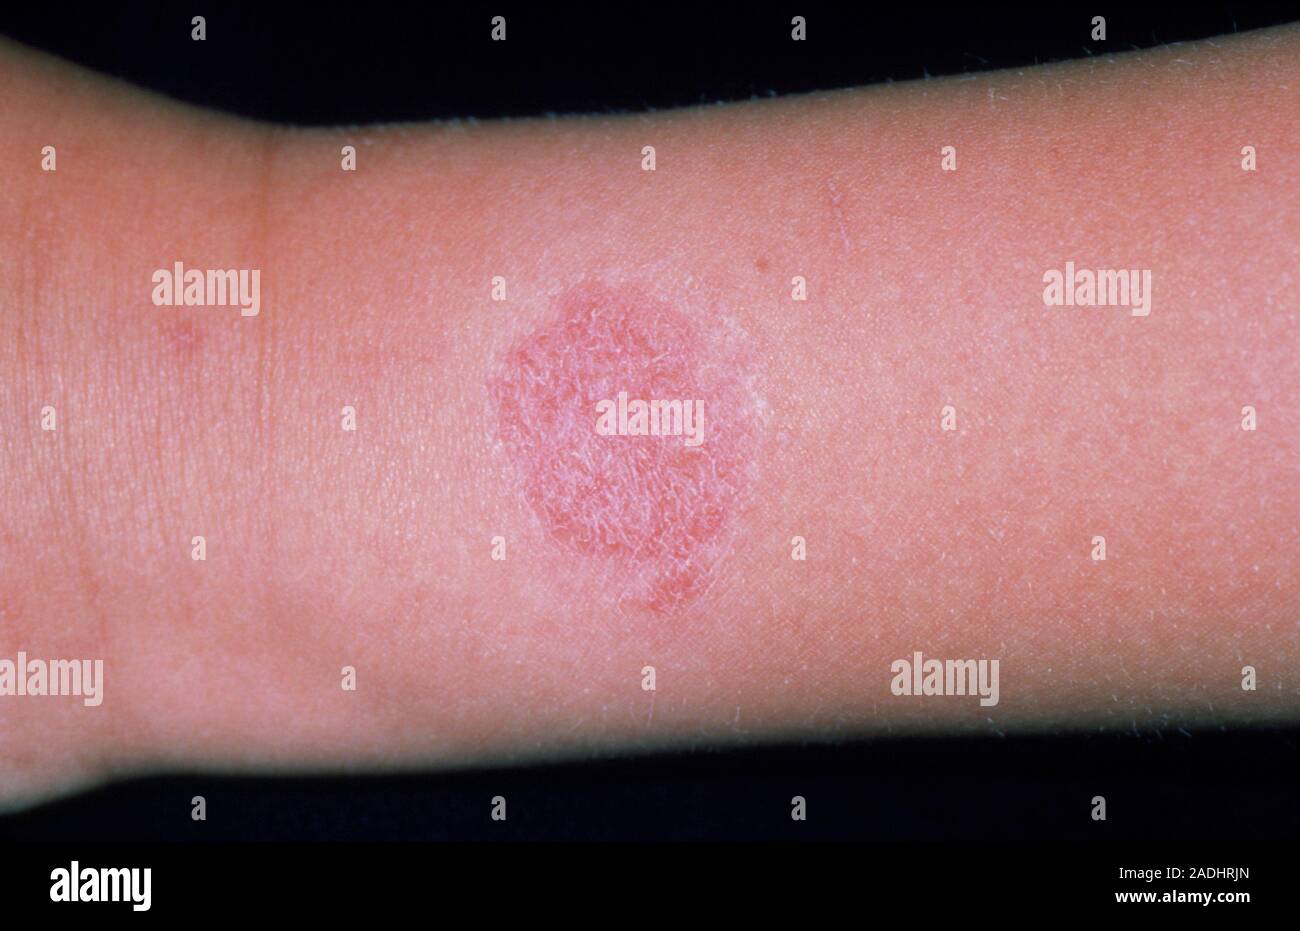 Reloj de pulsera dermatitis por alergia. Una erupción roja circular en un  paciente la muñeca causada por una alergia al níquel en un reloj de pulsera  carcasa. Este tipo de piel r